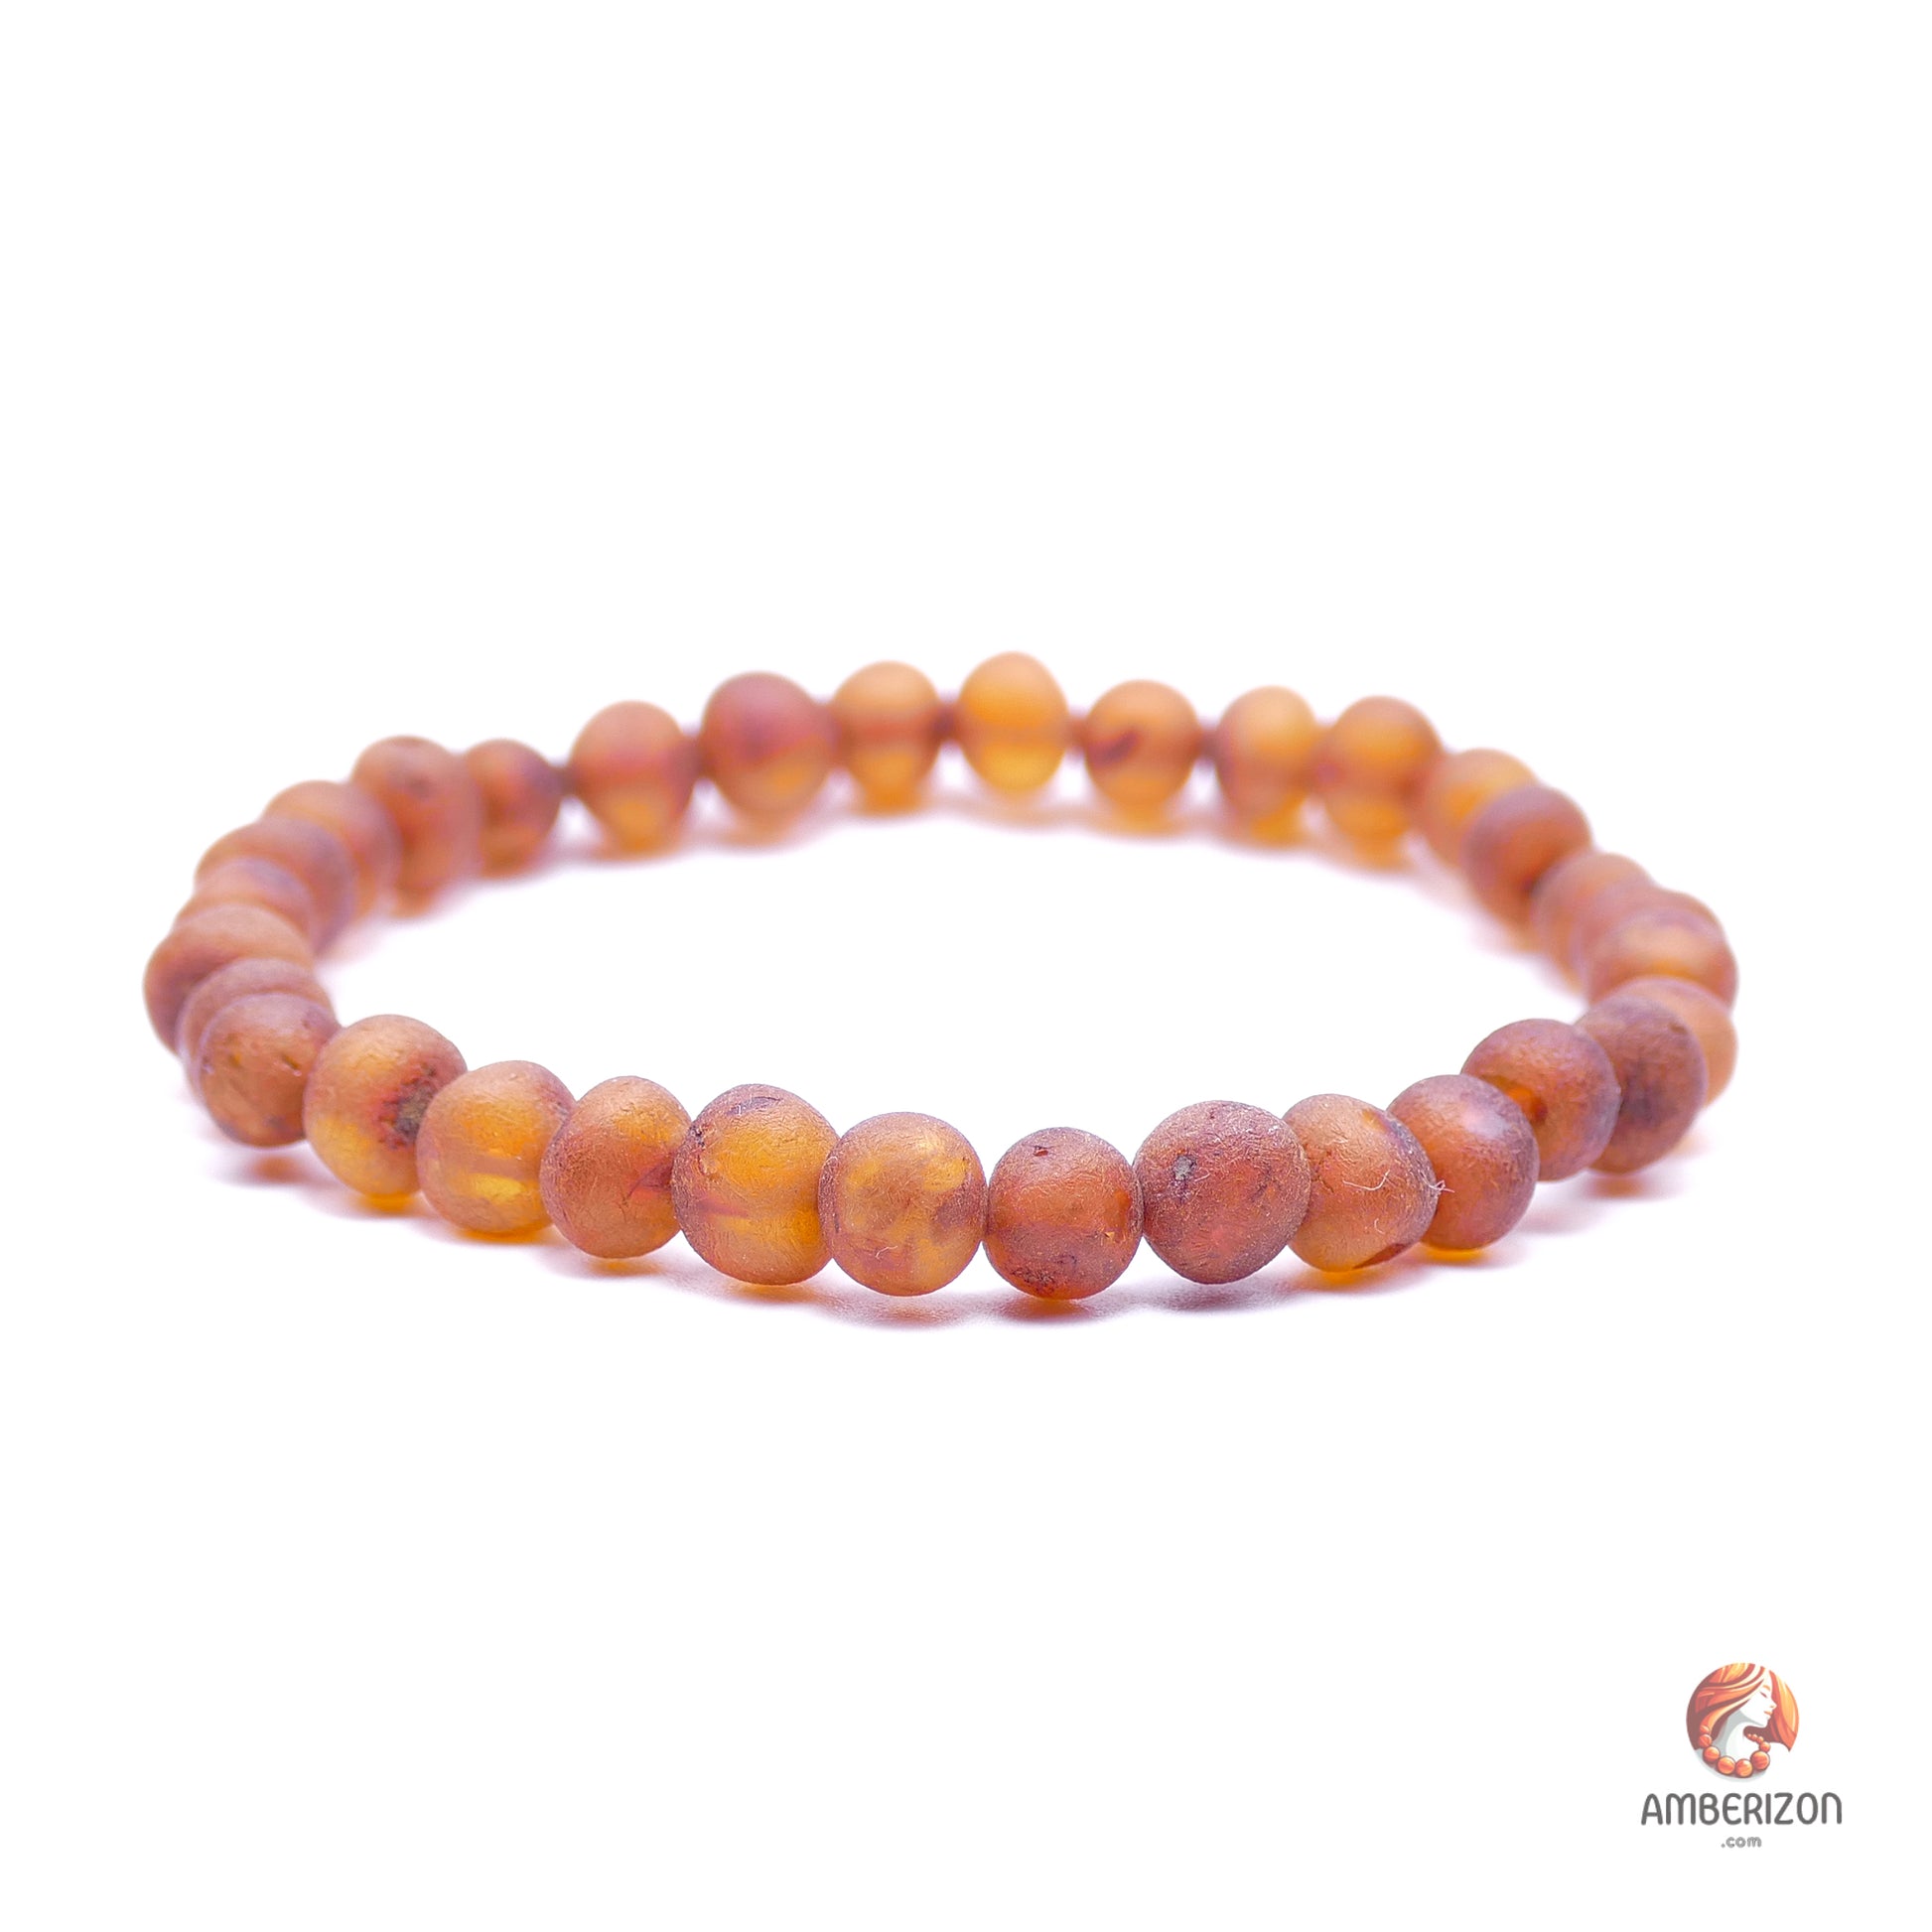 Unpolished raw amber bracelet - Premium orange baroque beads